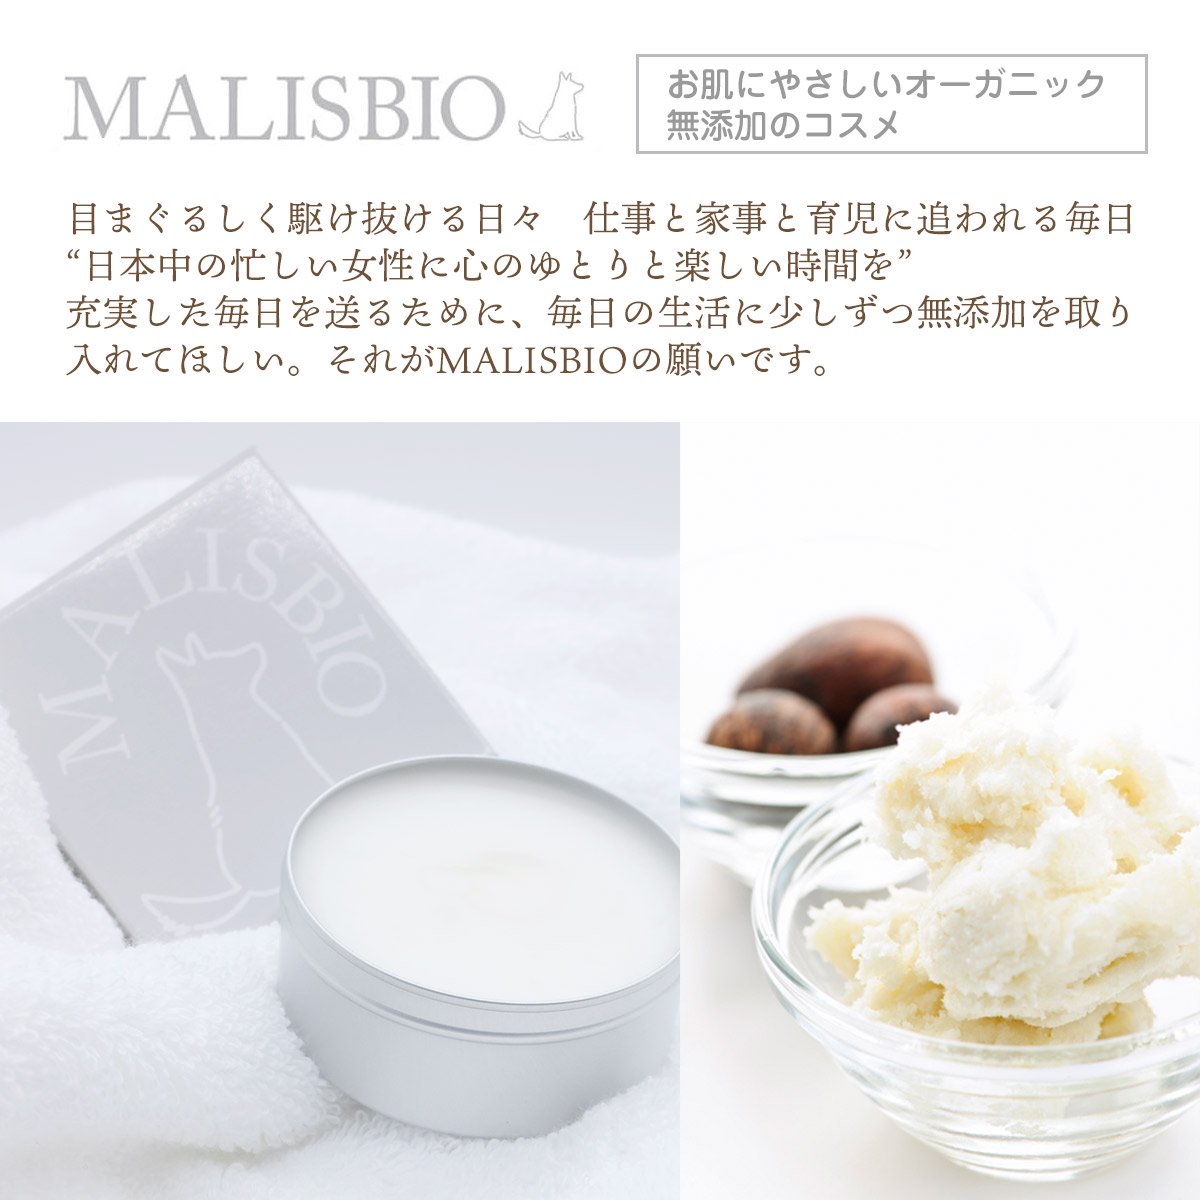 シアバター オーガニック 100% 一番収穫一番搾りの上級グレード 髪にも使える スパチュラ付 50g マリスビオ MALISBIO